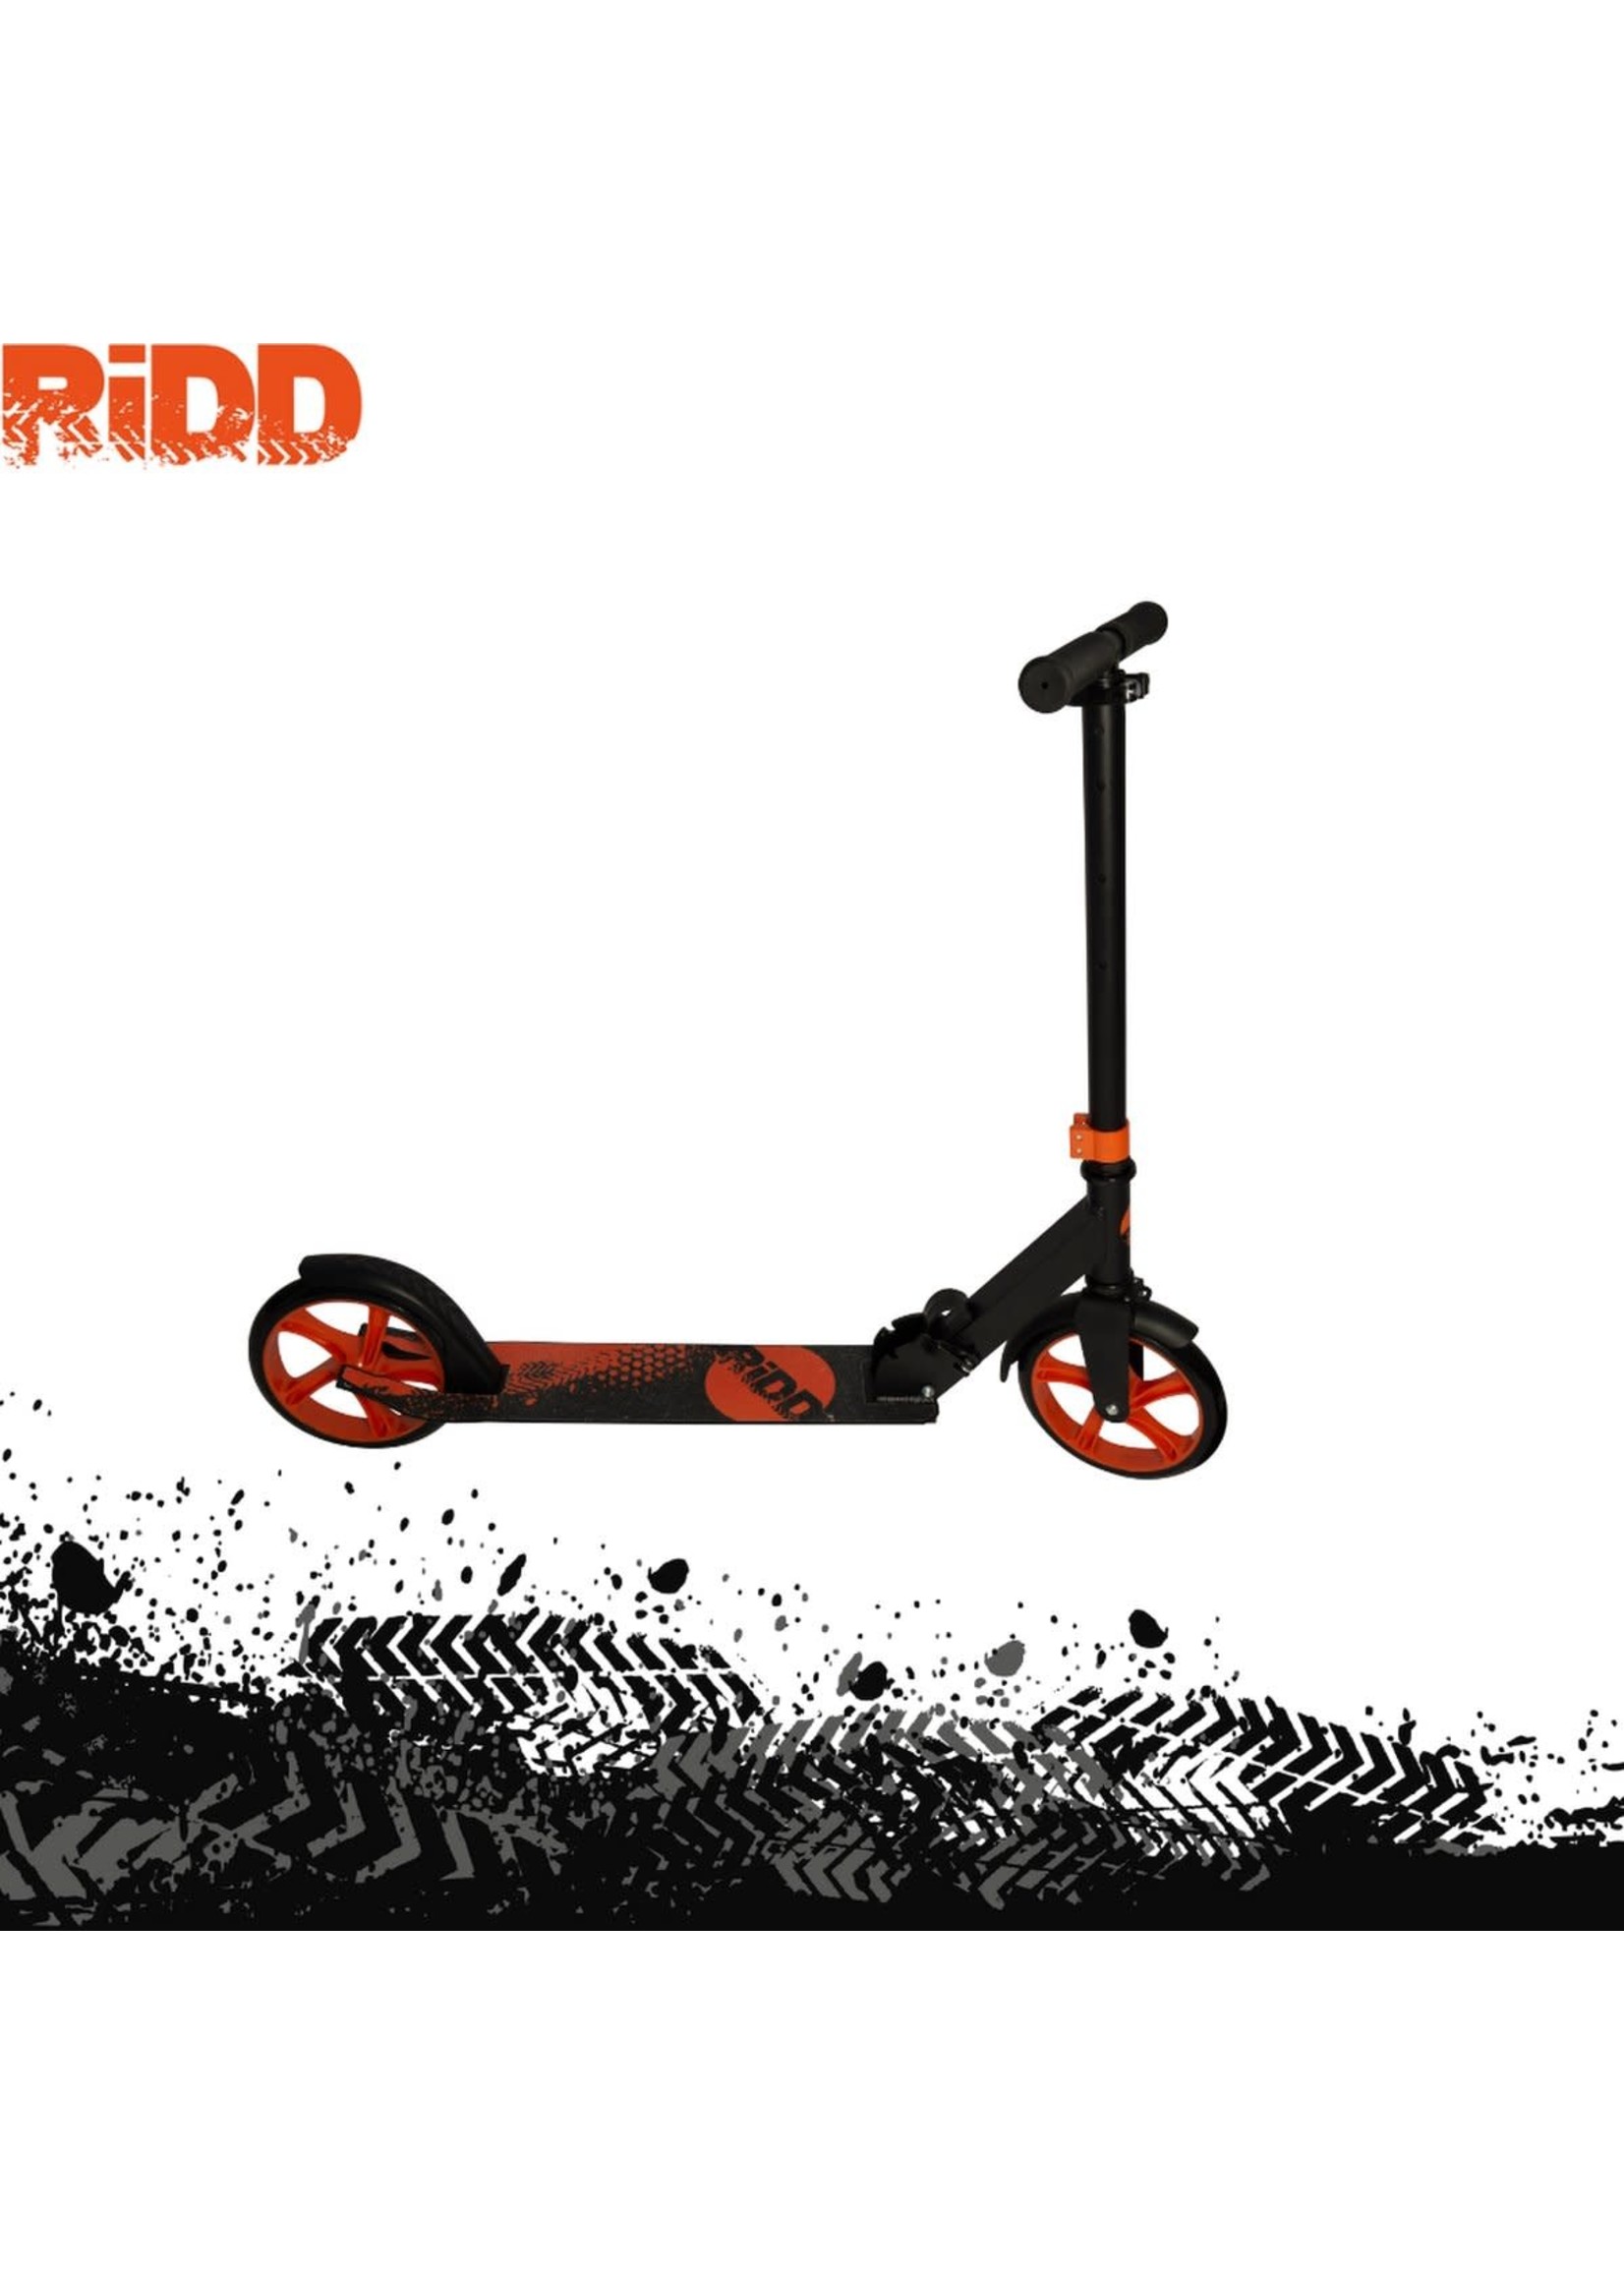 Ridd RiDD Foldable Scooter - Opvouwbare Step - Vanaf 8 jaar - ABEC-9 - 200 mm PU Wheels - Voetrem